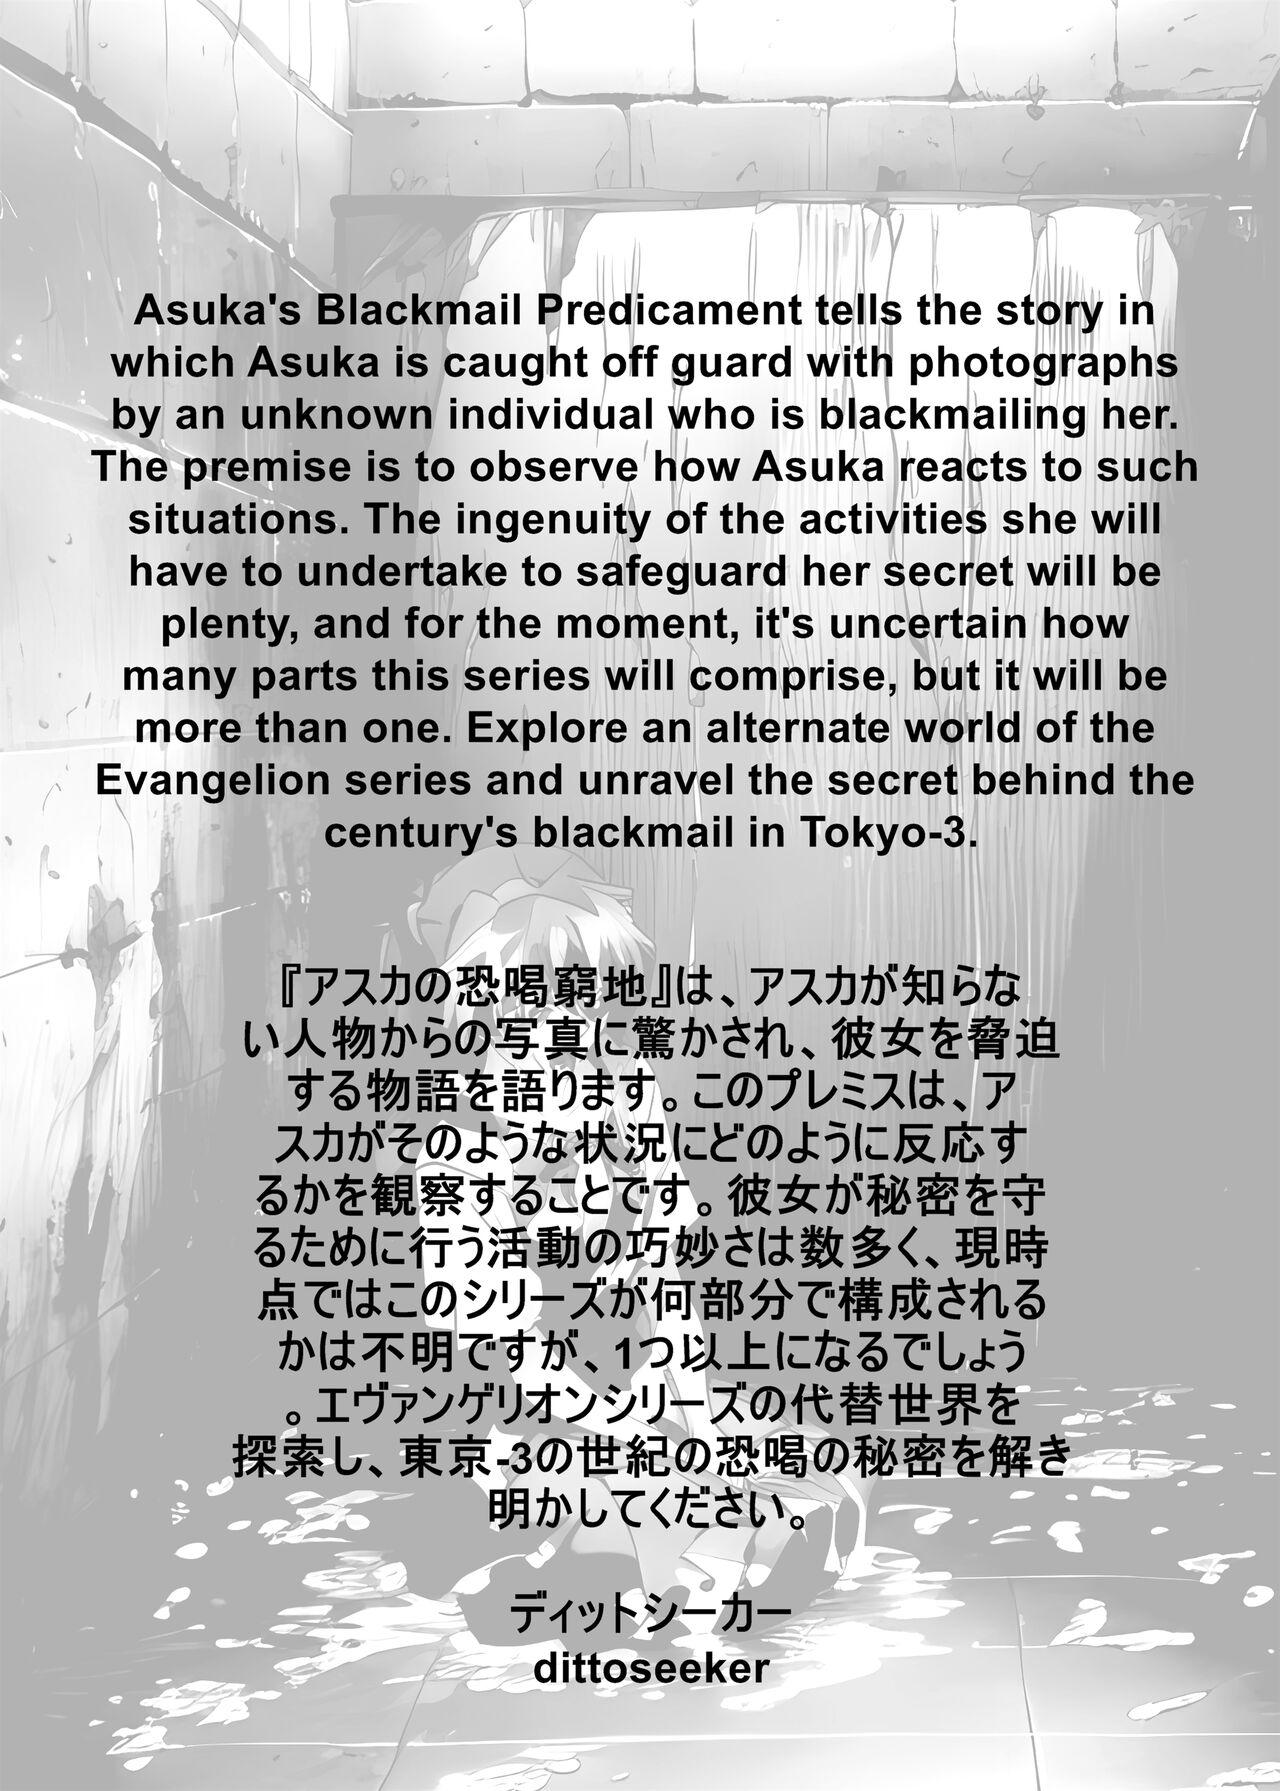 Cojiendo Asuka's Blackmail Predicament - Neon genesis evangelion Hot - Picture 3